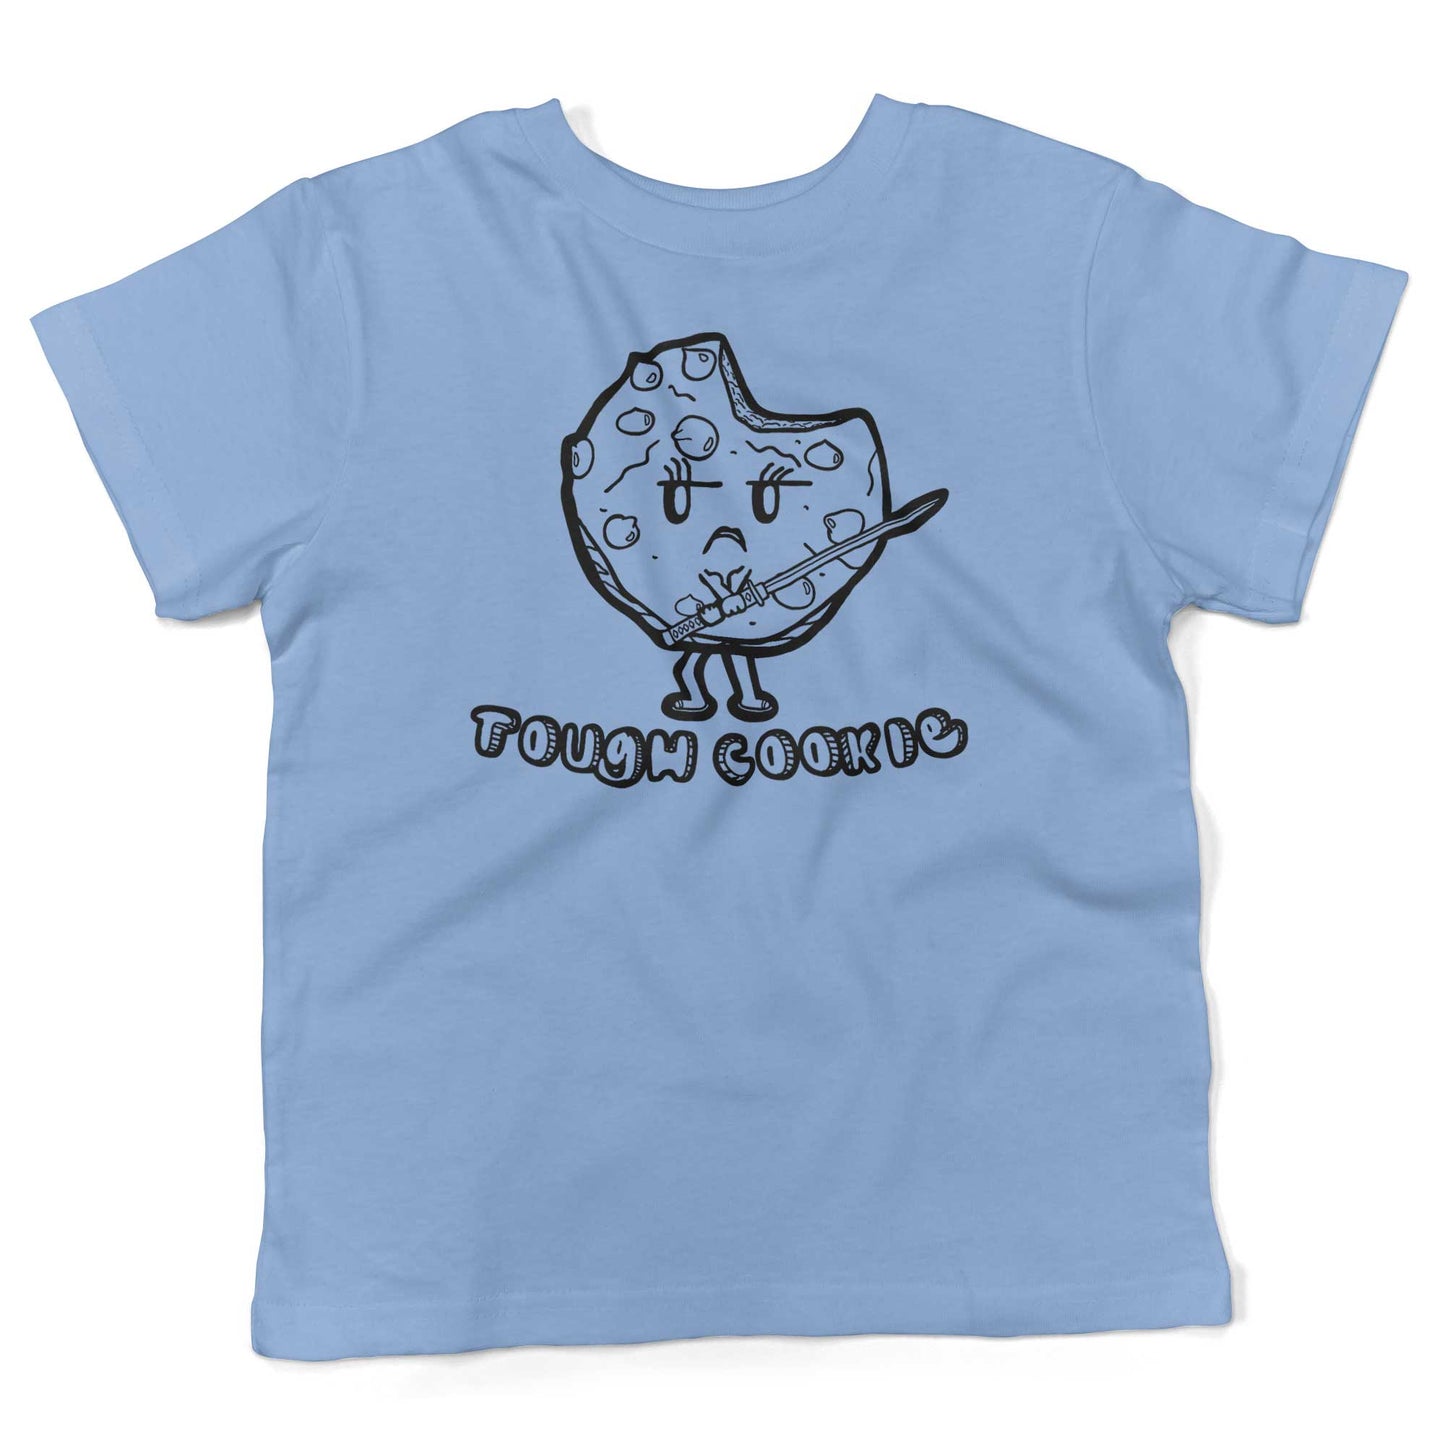 Tough Cookie Toddler Shirt-Organic Baby Blue-2T